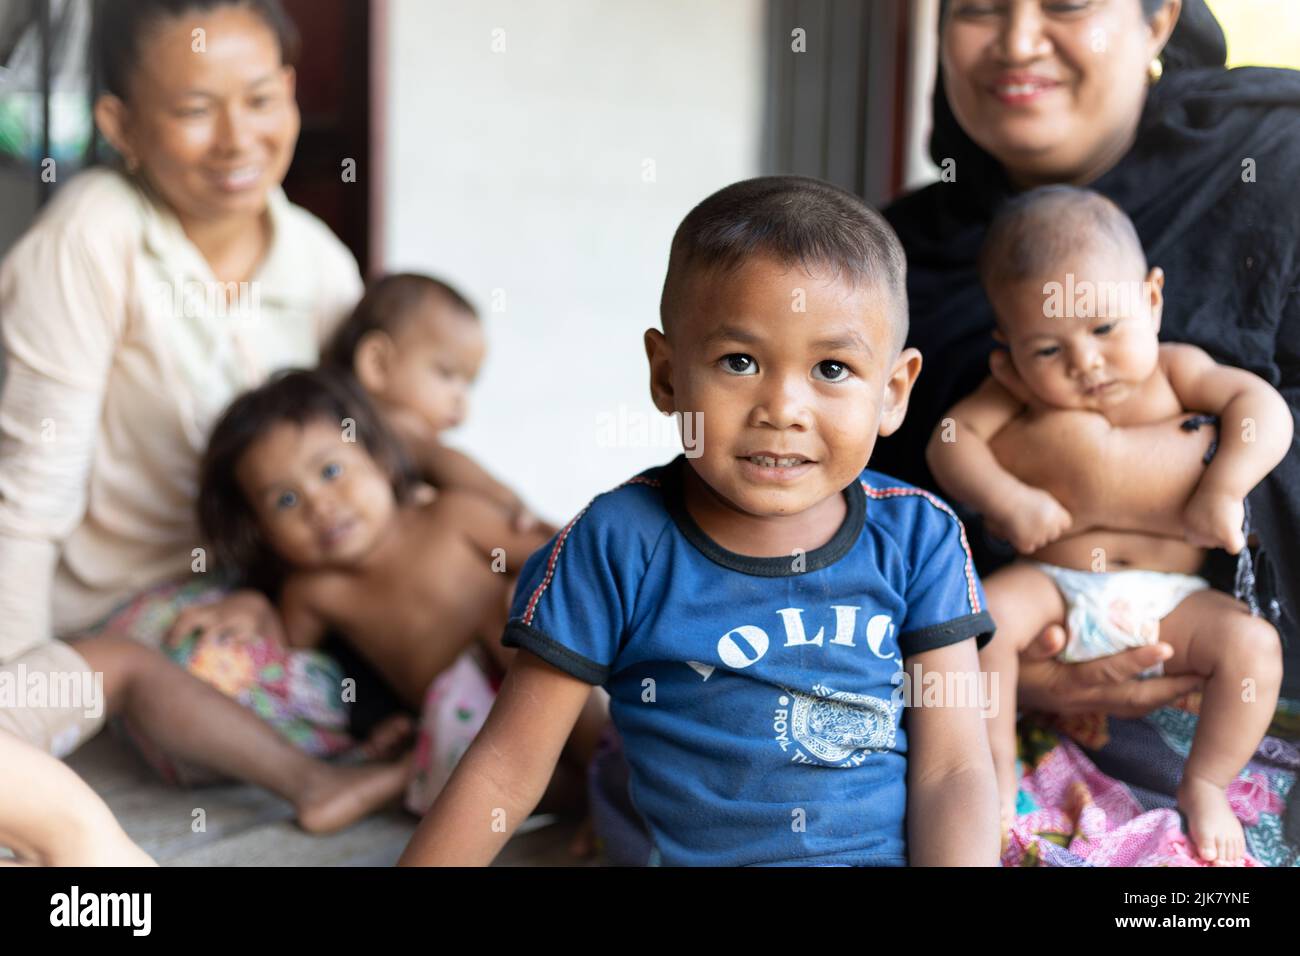 Ein junger Thai-Junge blickt auf die Kamera, und seine lächelnde Familie sitzt dahinter. Bruder, Schwestern, Mutter, Freund. Thailand, arm, ländlich. Stockfoto